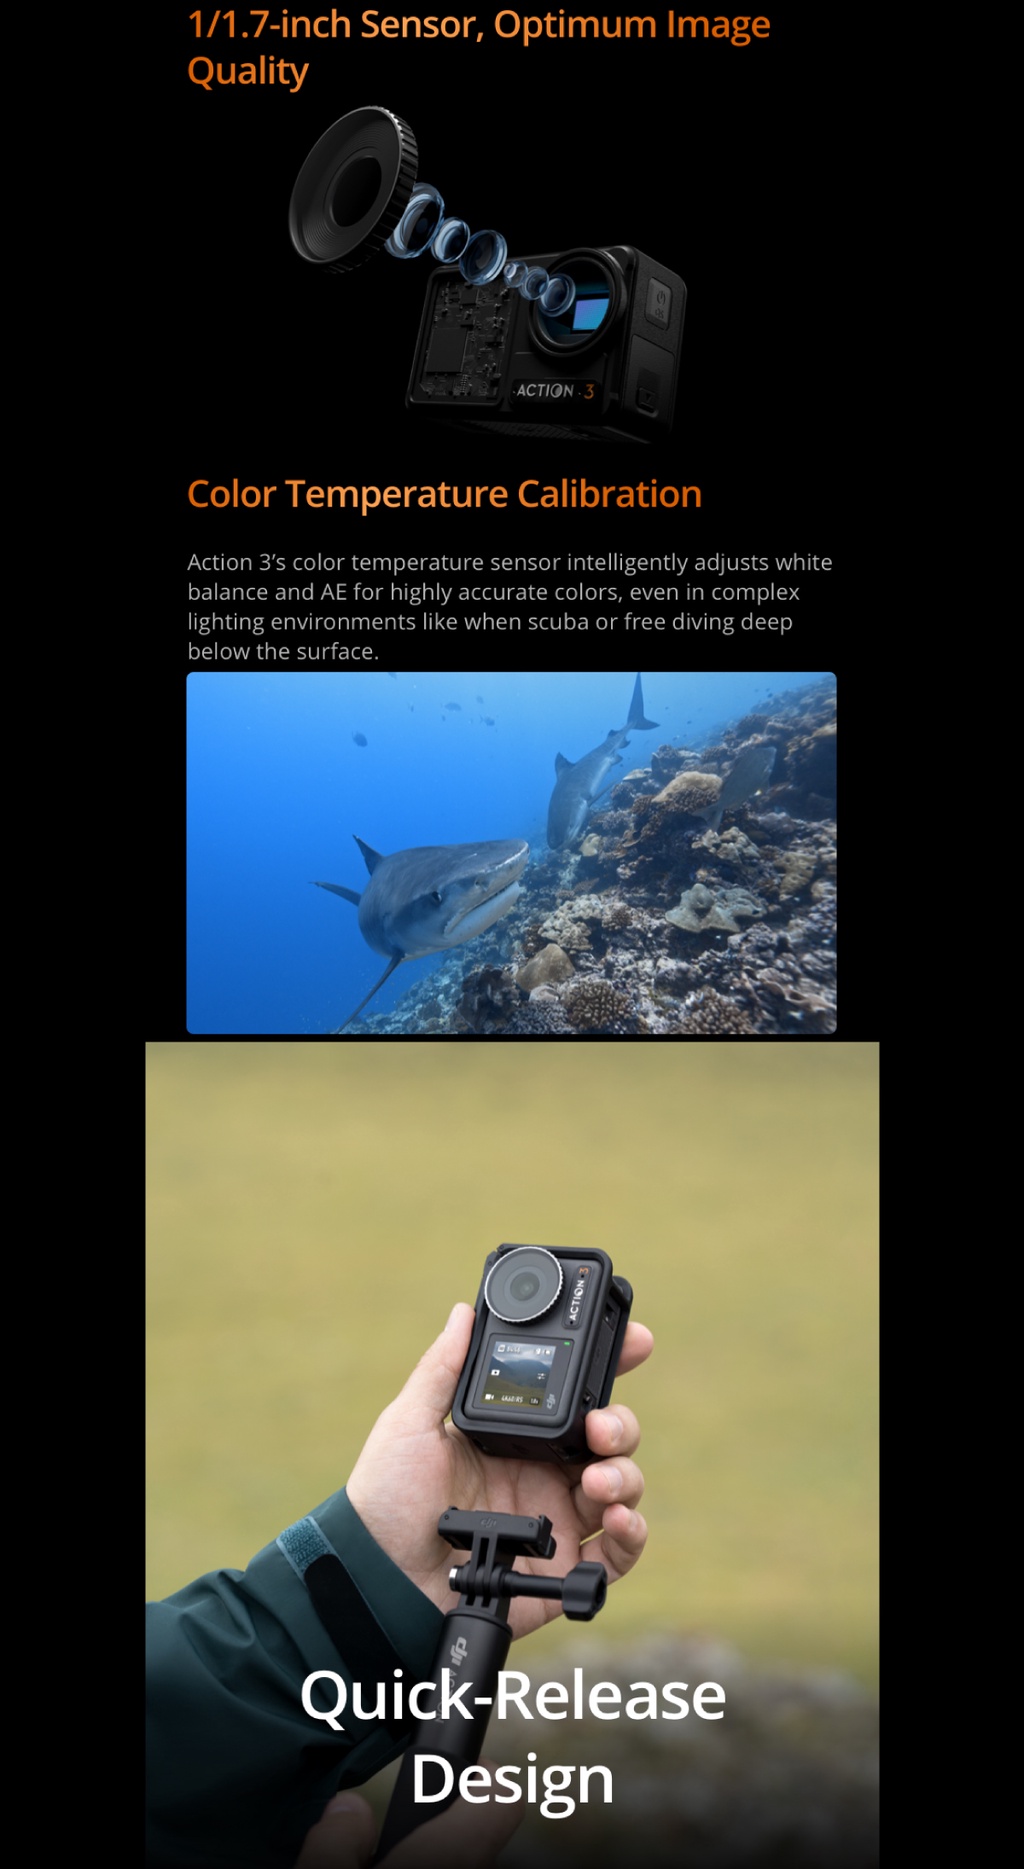 คำอธิบายเพิ่มเติมเกี่ยวกับ DJI Osmo Action 3 Adventure / Standard Combo กล้องถ่ายใต้น้ำ กันน้ำได้ 16 ม. ถ่ายภาพความละเอียด 12MP